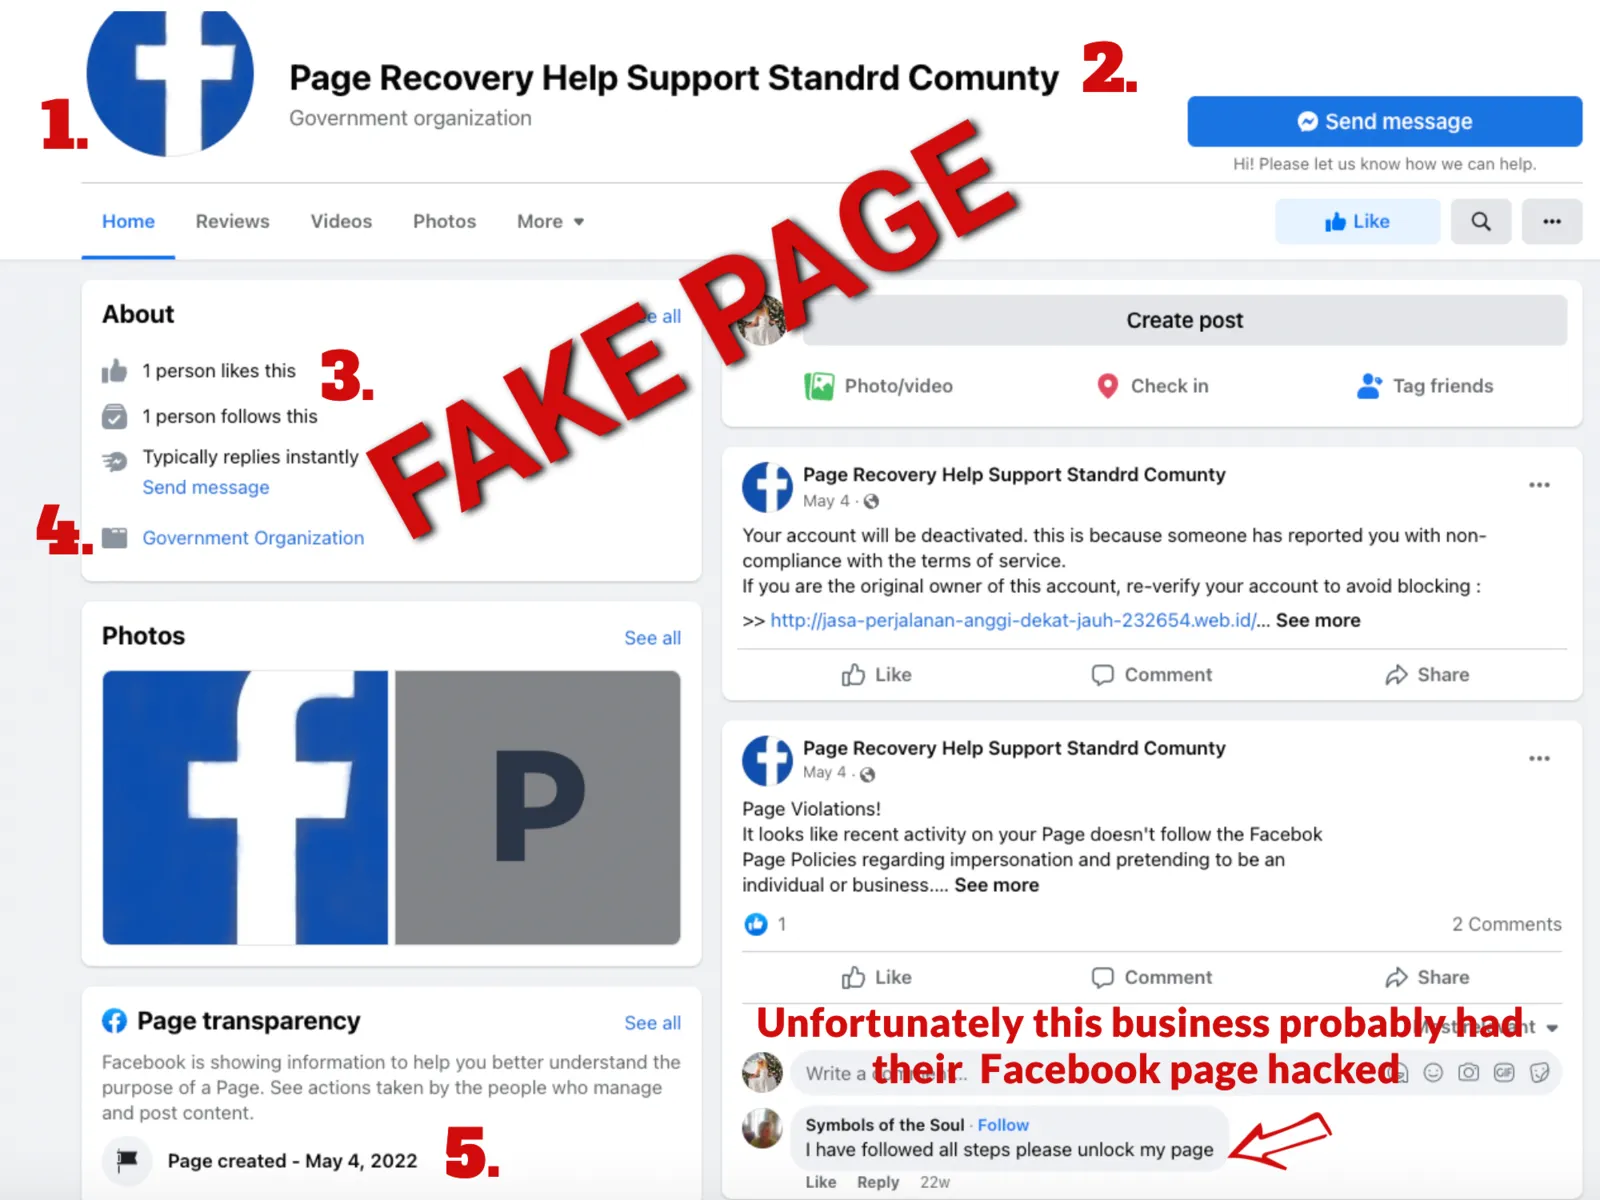 Fake Facebook Page